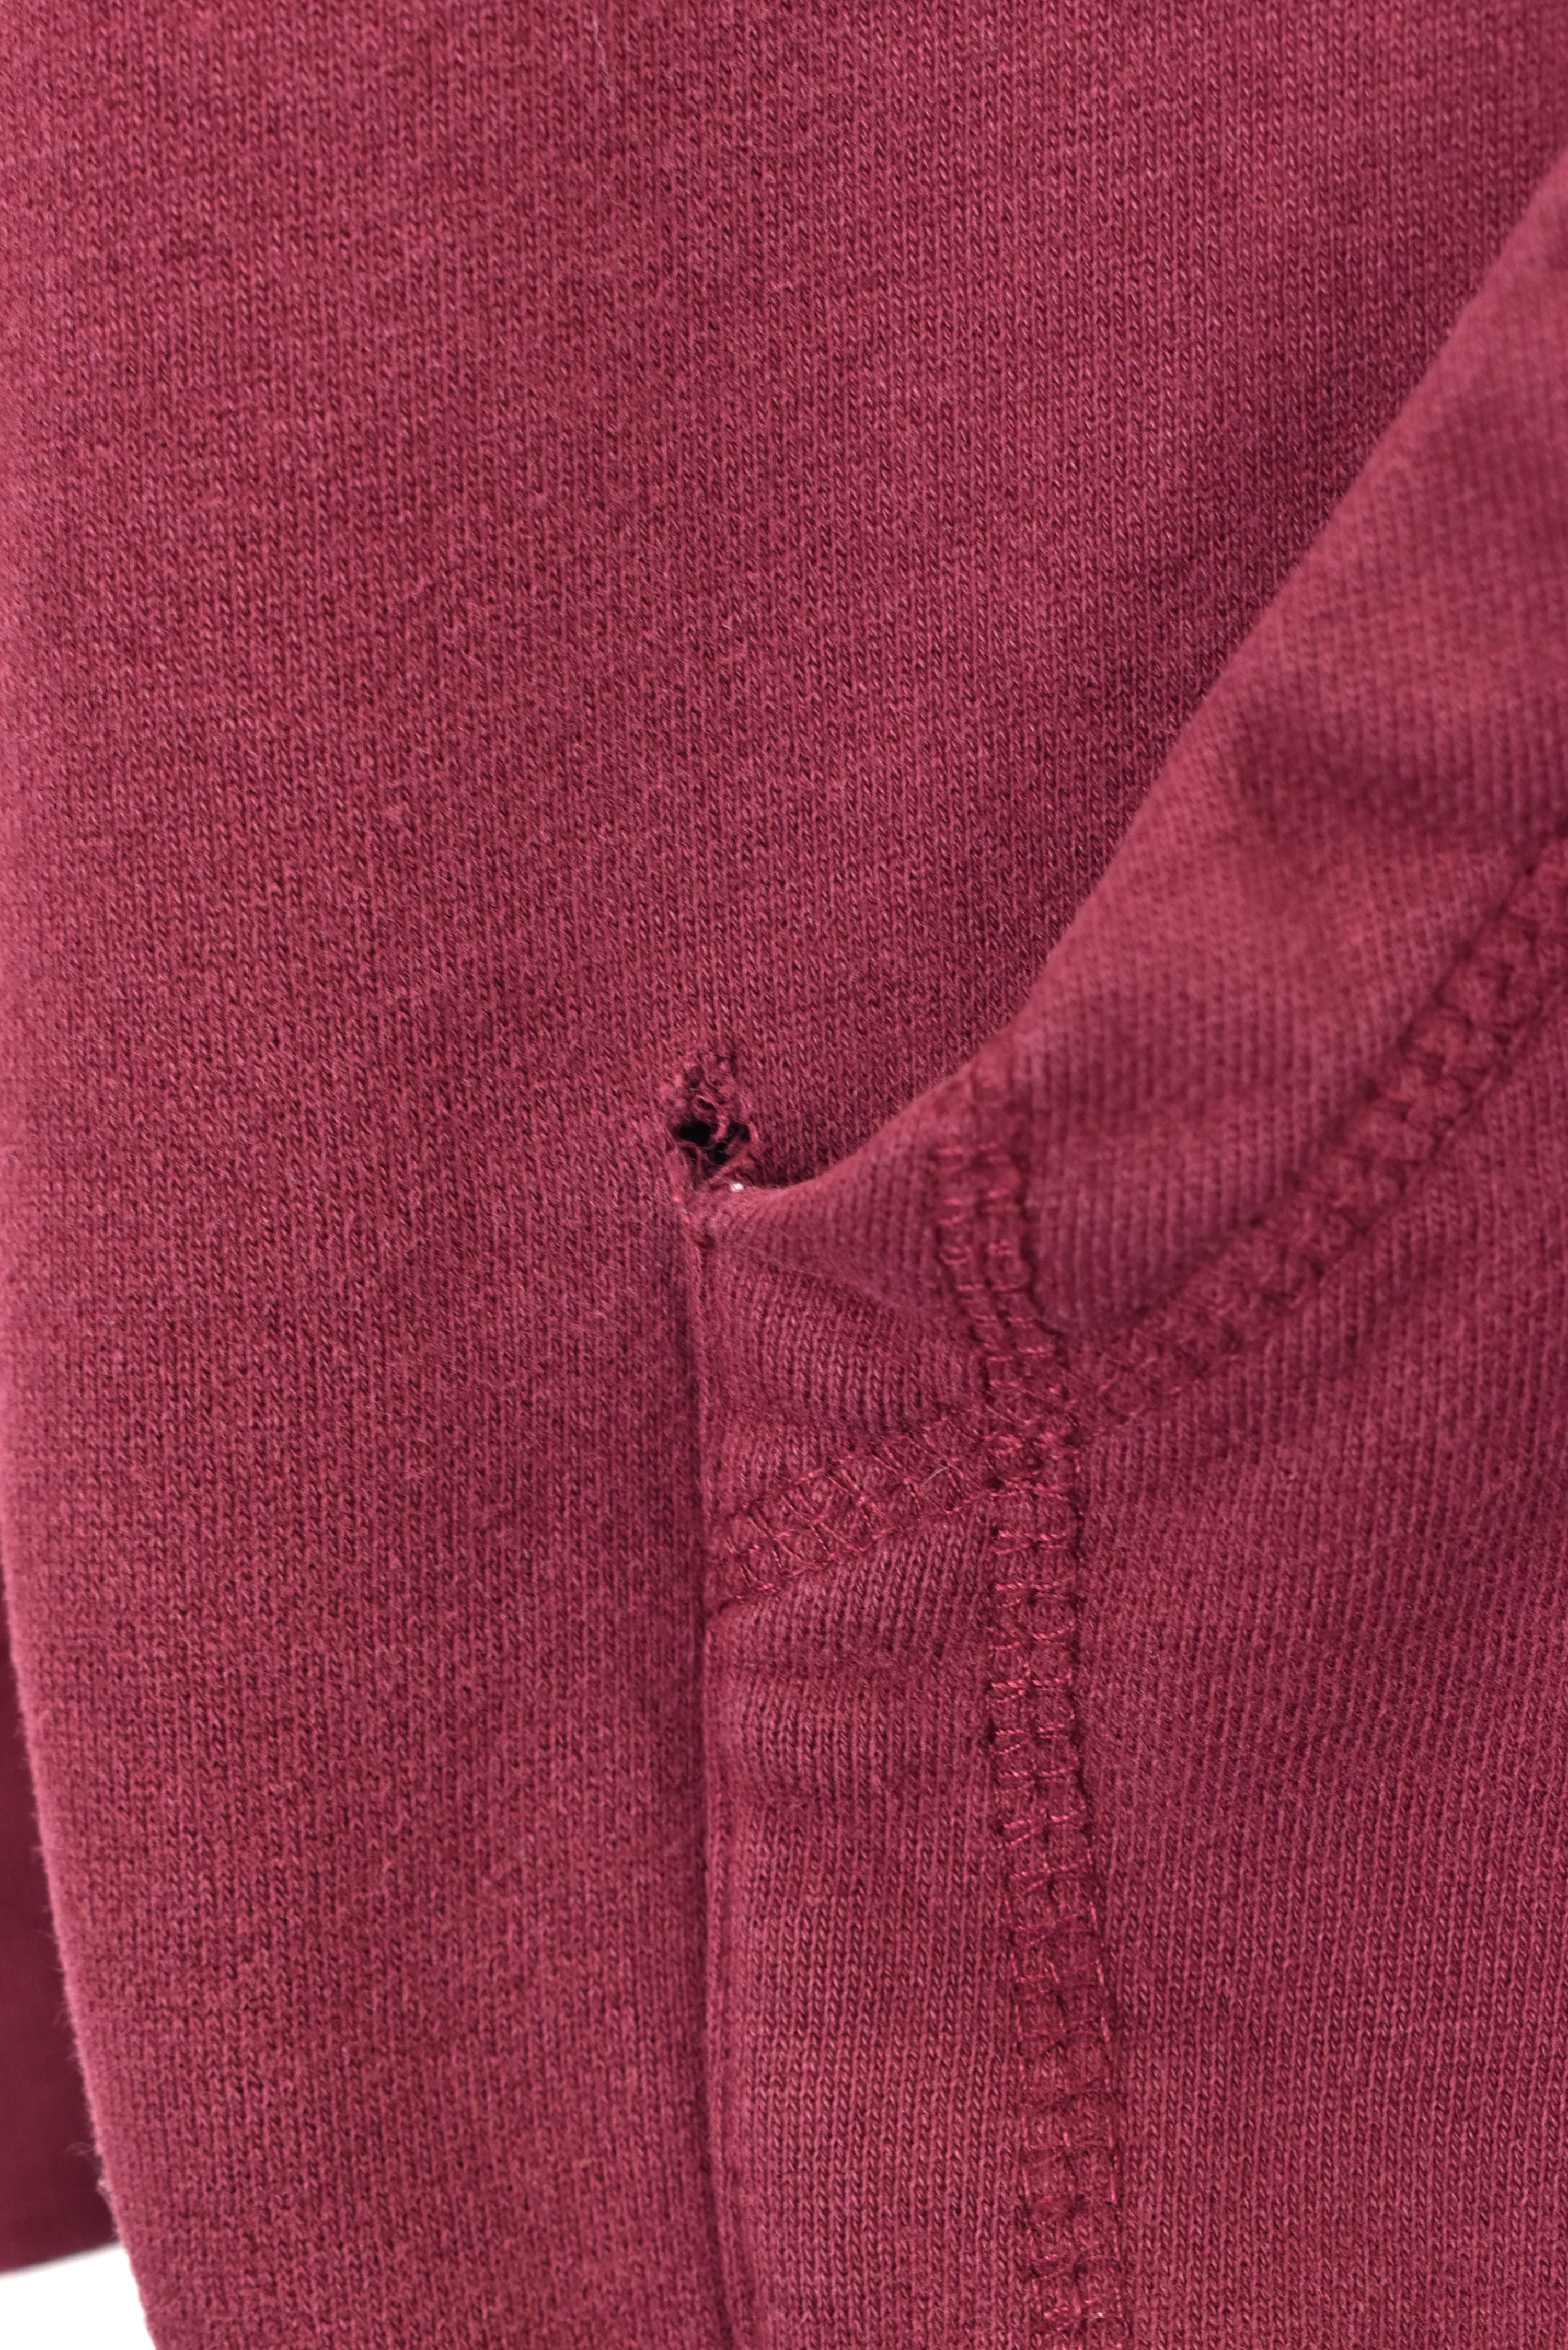 Vintage Arizona State University hoodie, burgundy embroidered sweatshirt - AU S COLLEGE